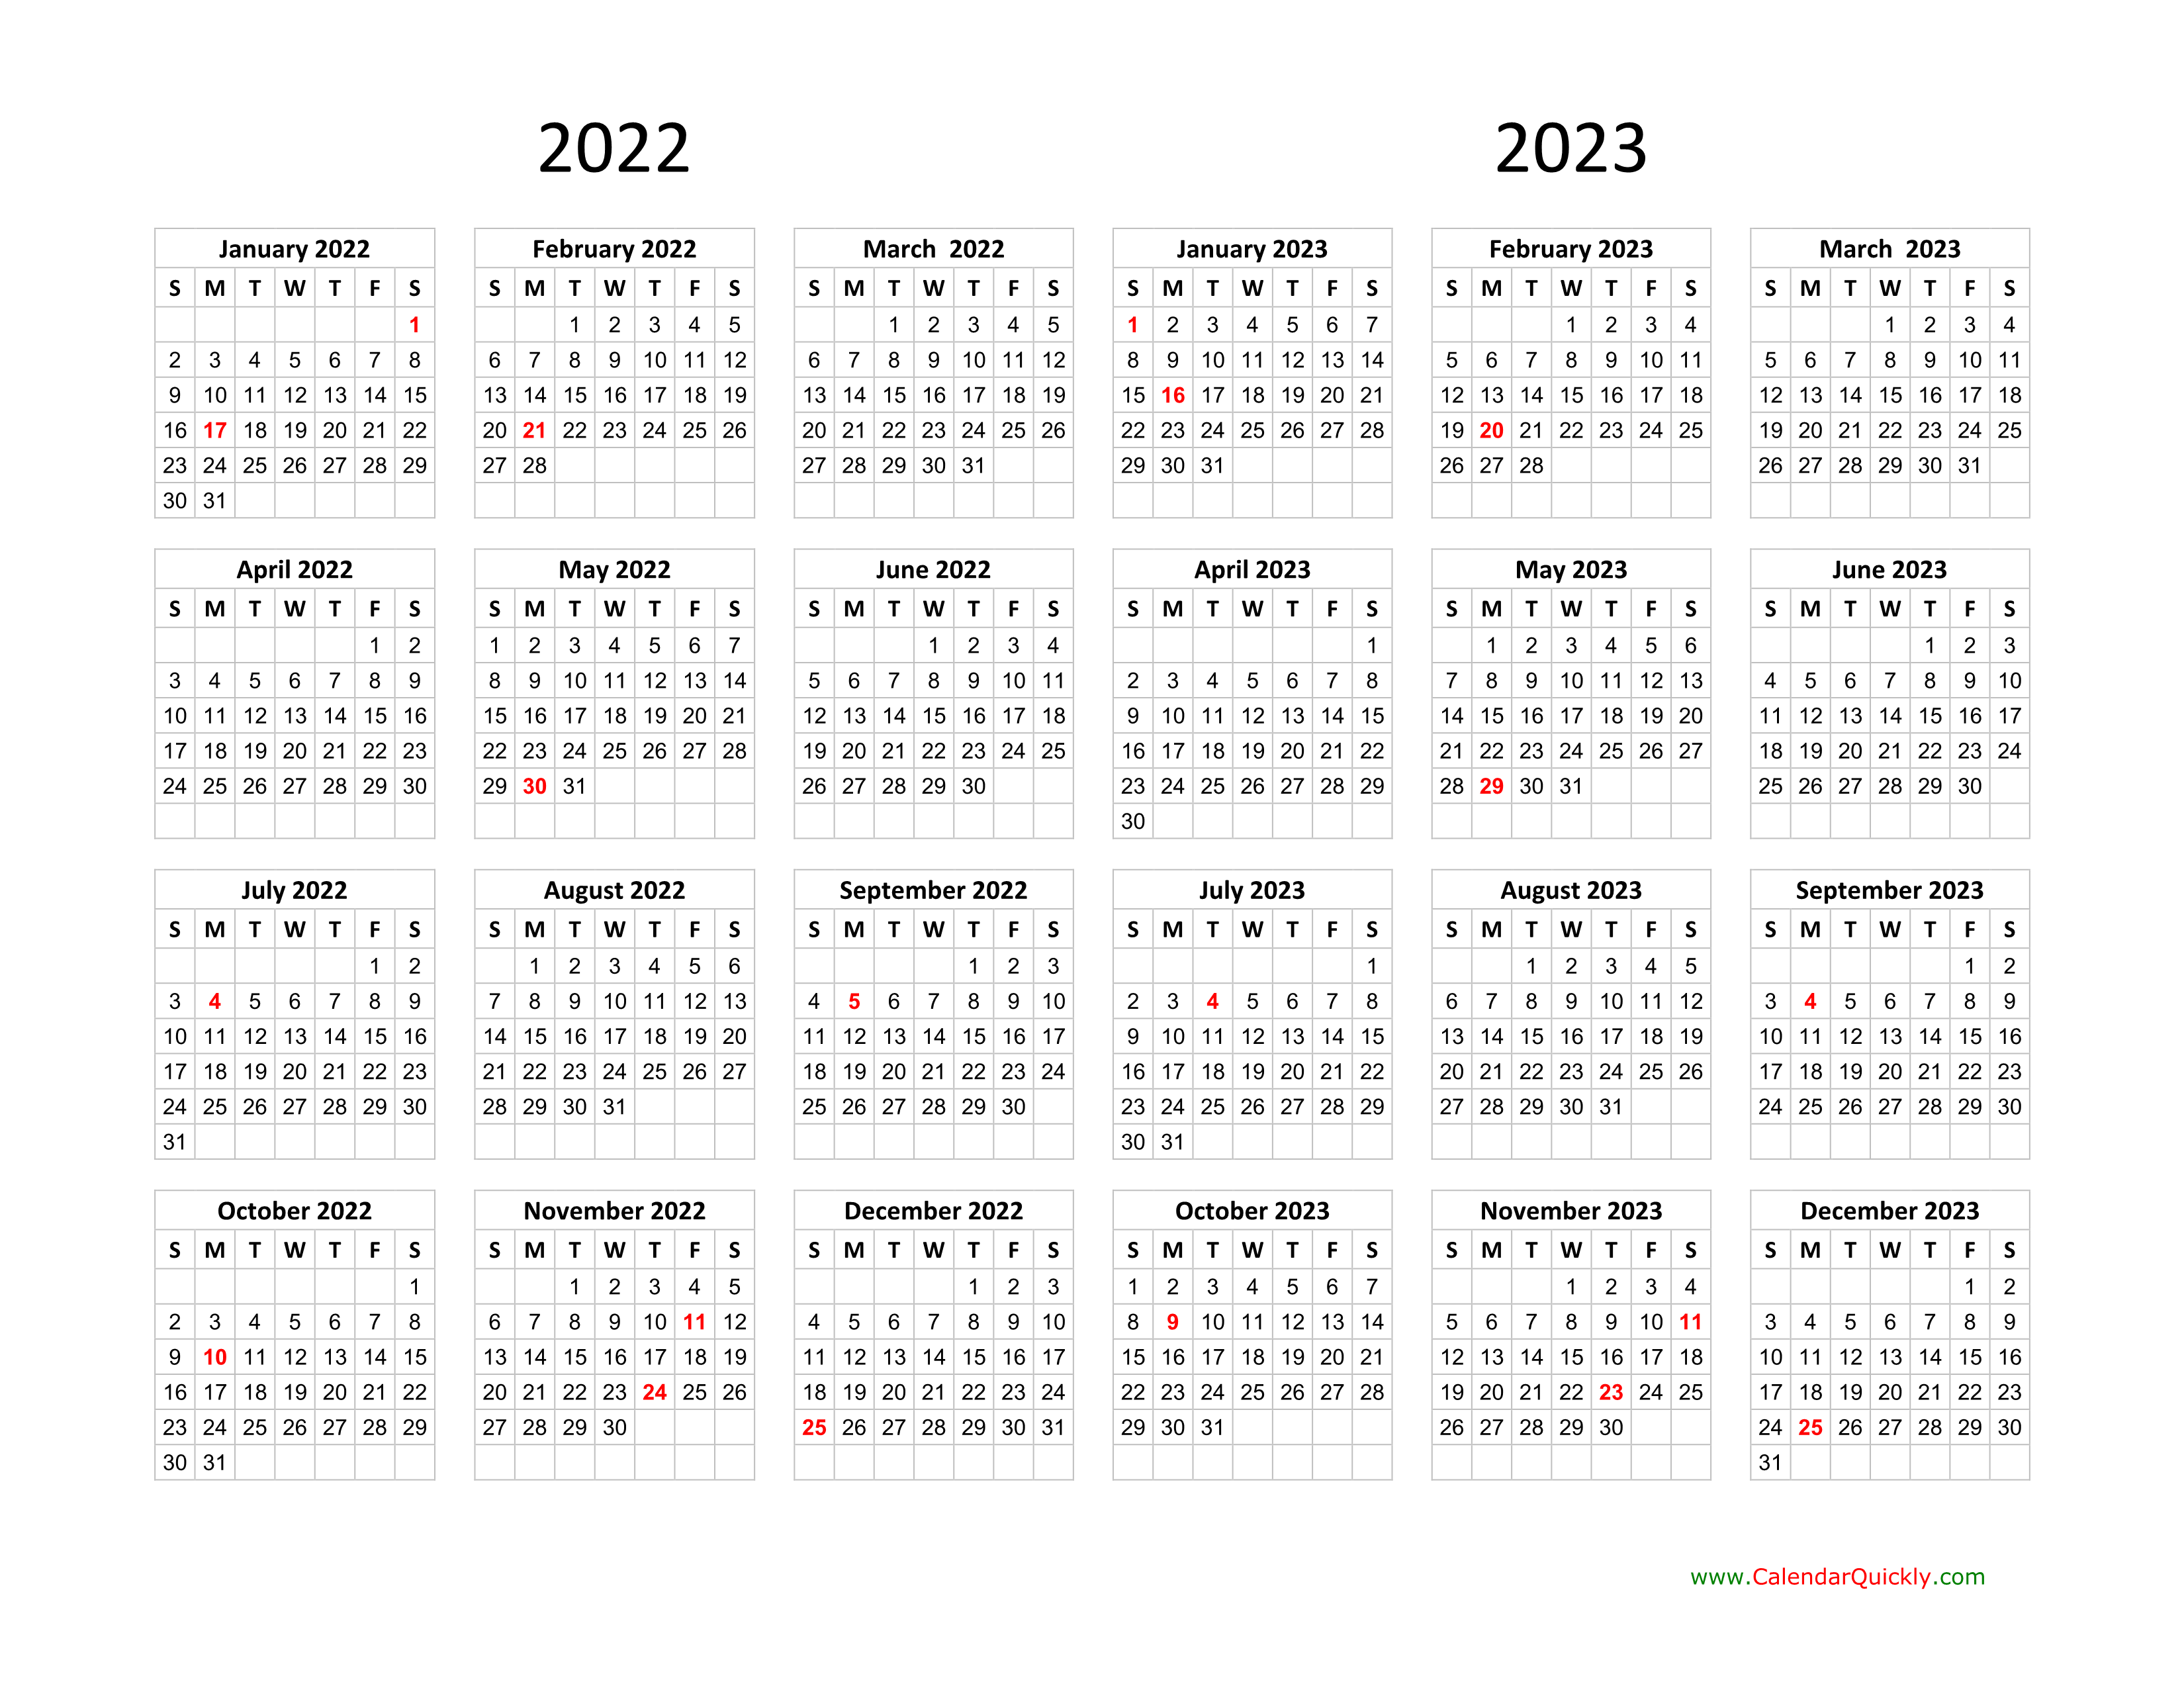 Gisd 2022 To 2023 Calendar - Calendar2023.net